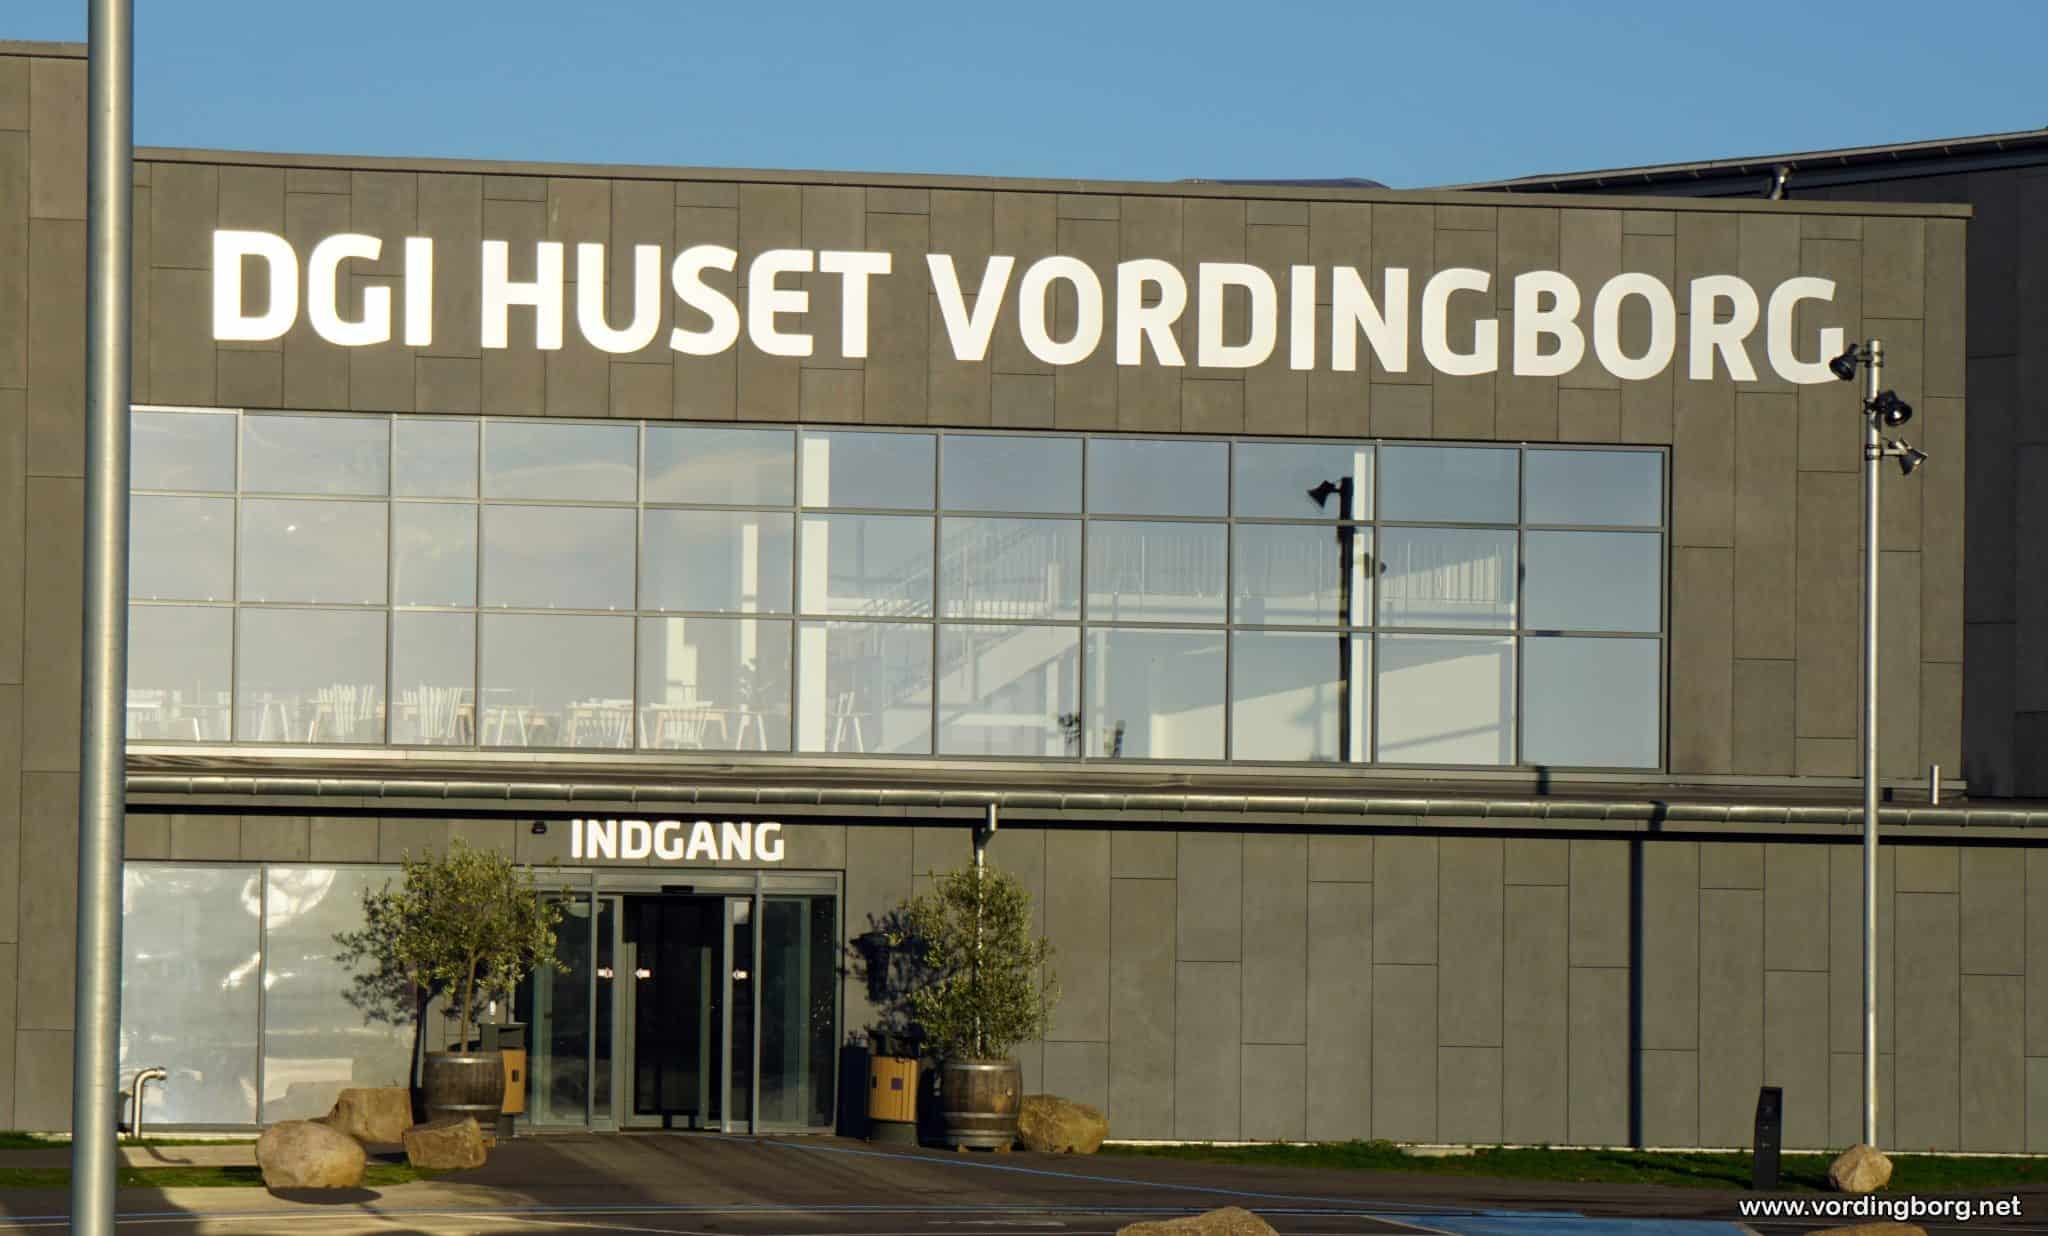 DGI Huset Vordingborg